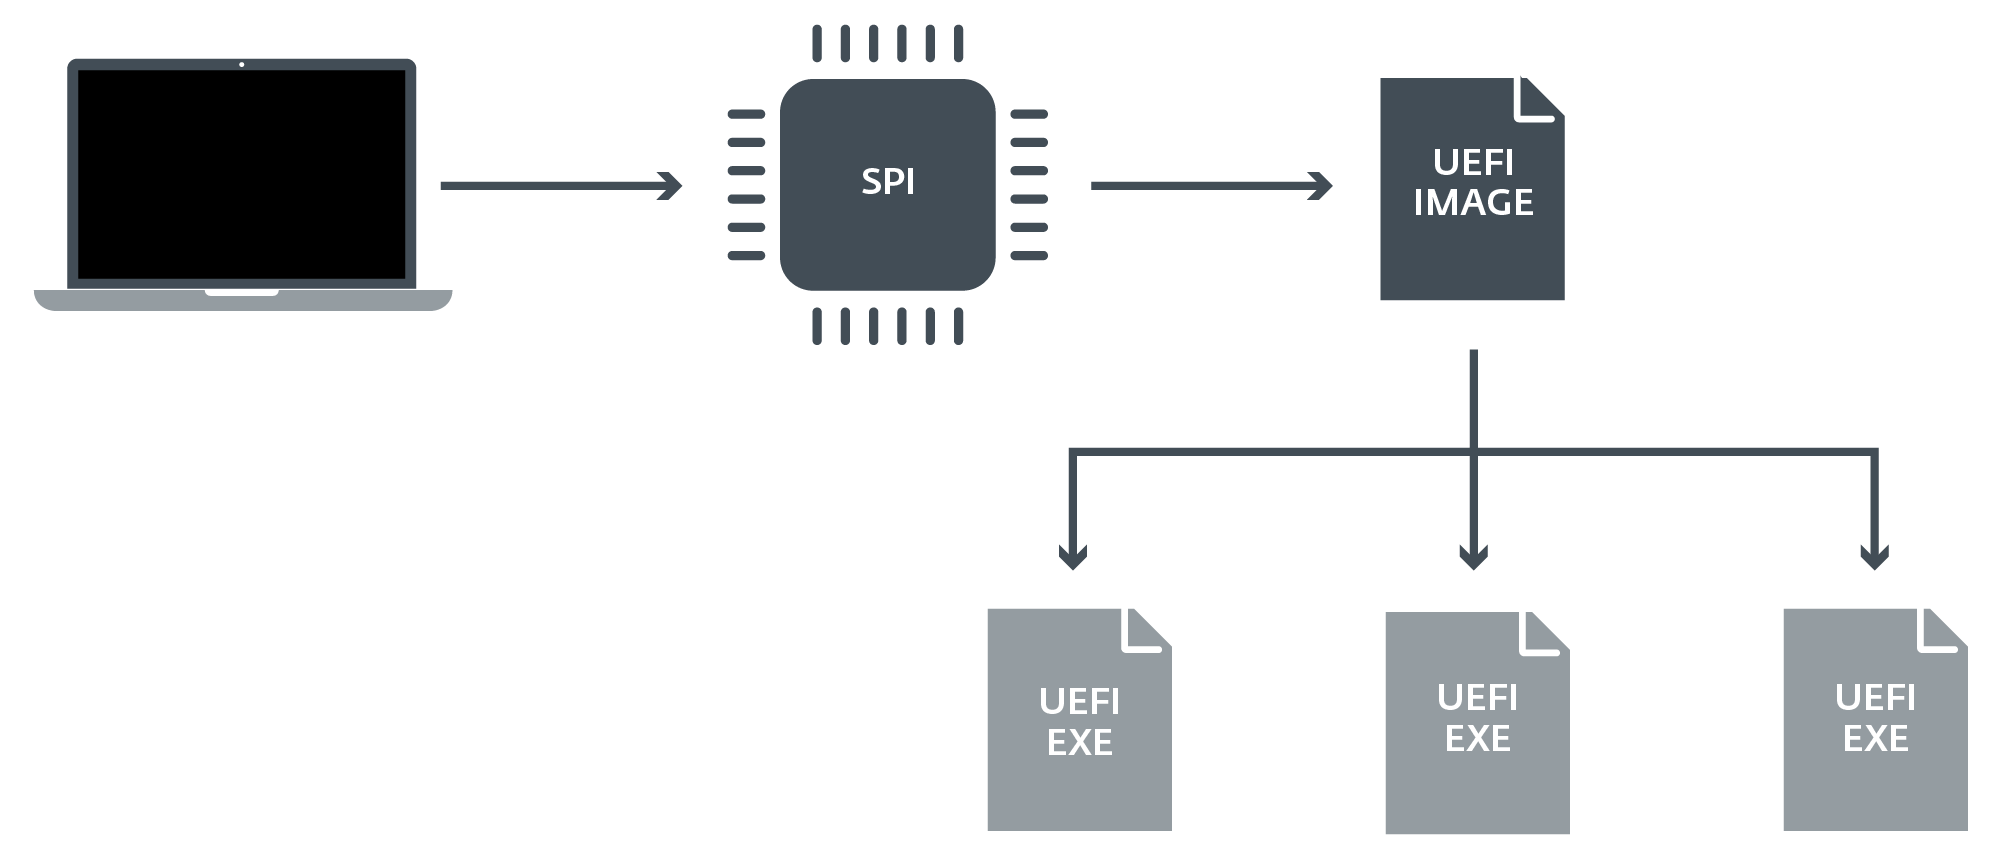  Jak jsou UEFI spustitelné soubory/ovladače uloženy v PC